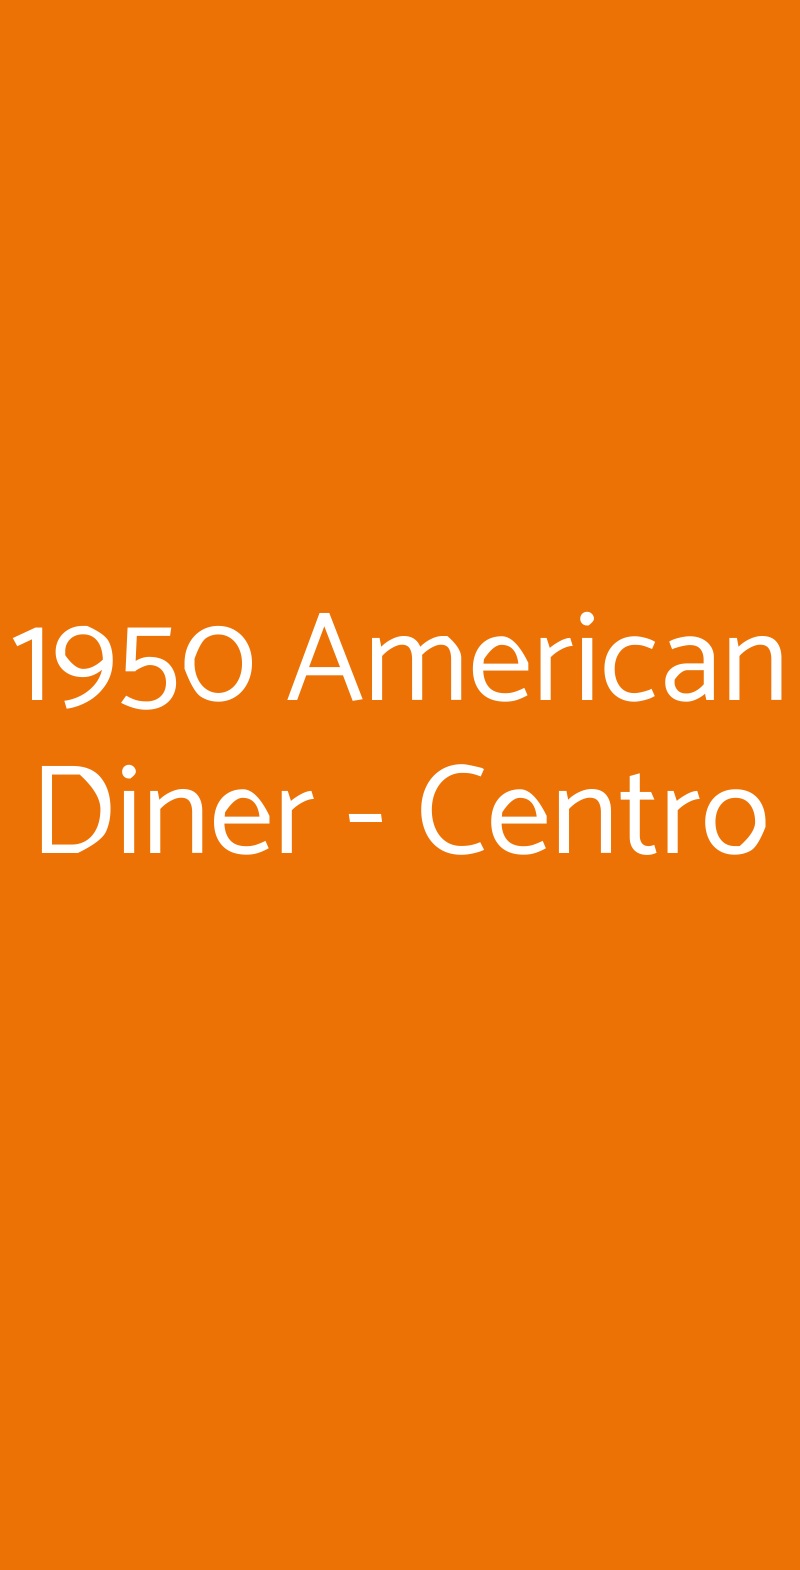 1950 American Diner - Centro Firenze menù 1 pagina